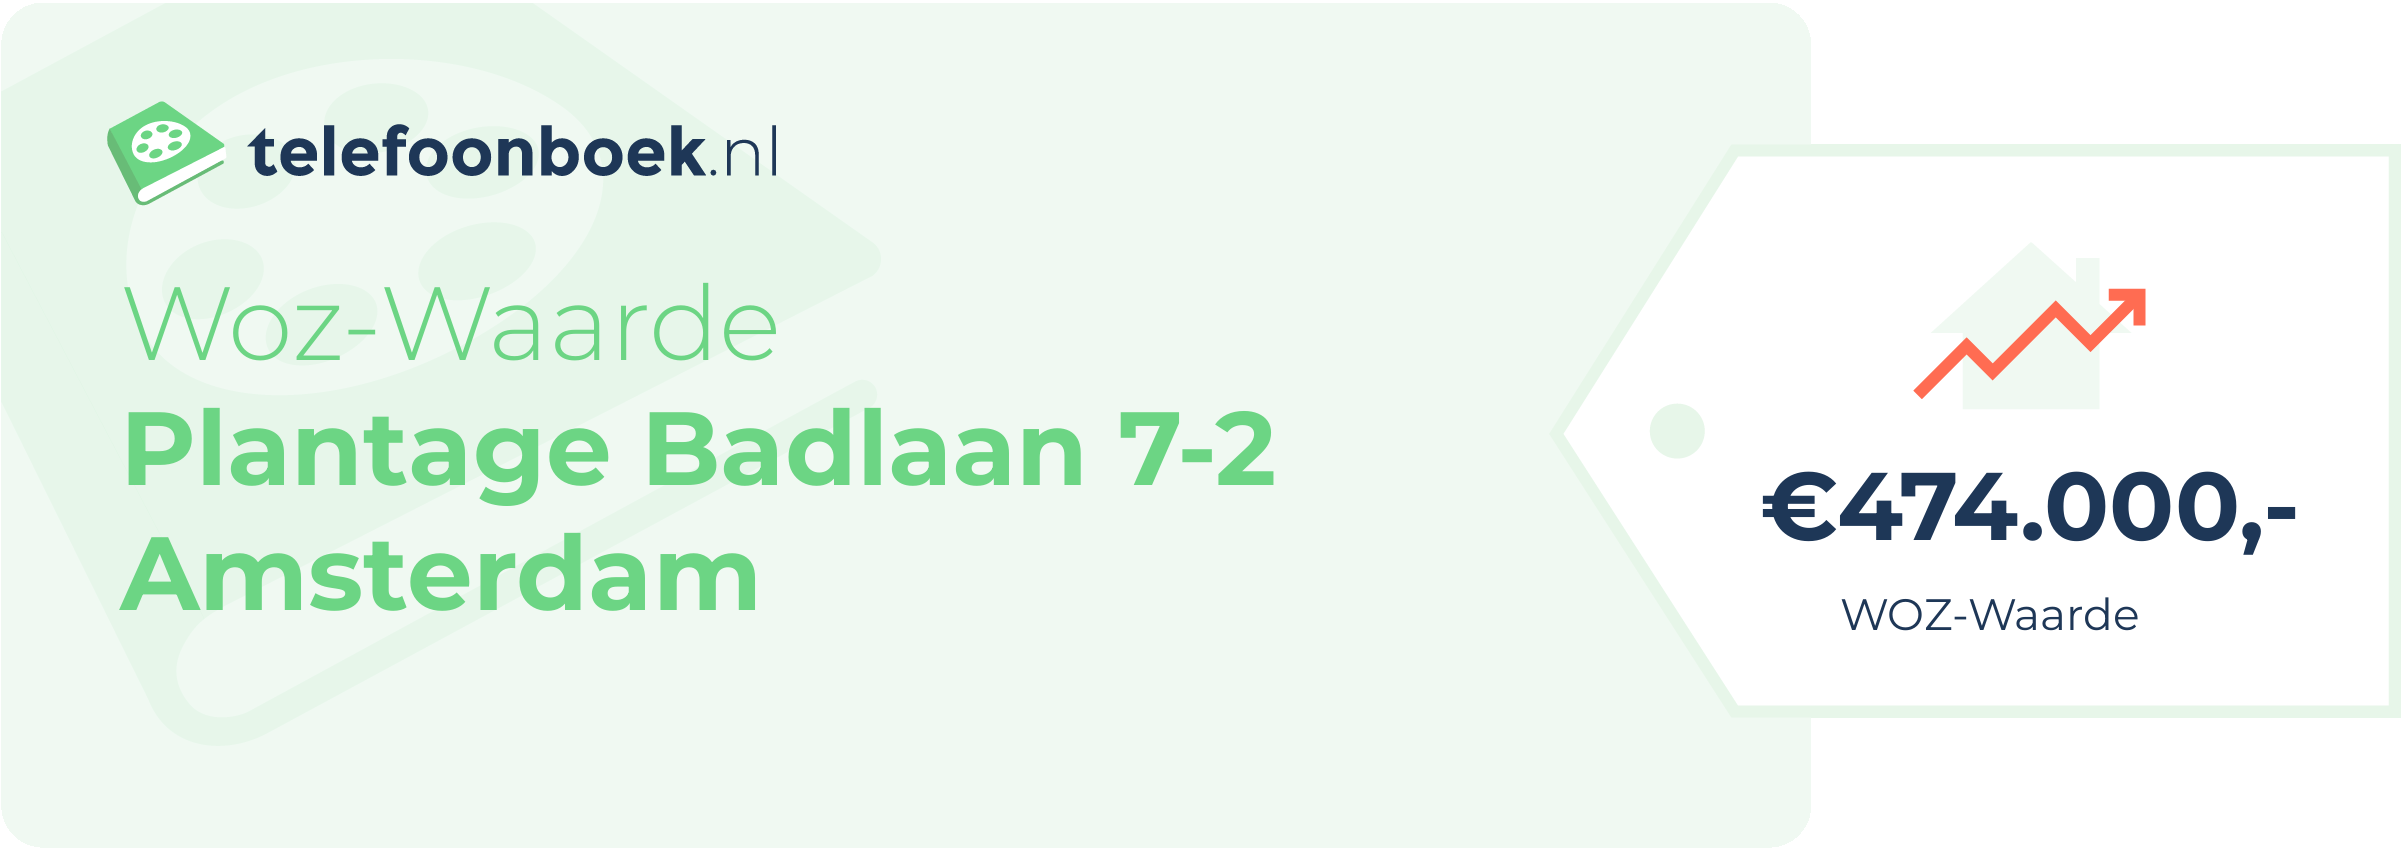 WOZ-waarde Plantage Badlaan 7-2 Amsterdam